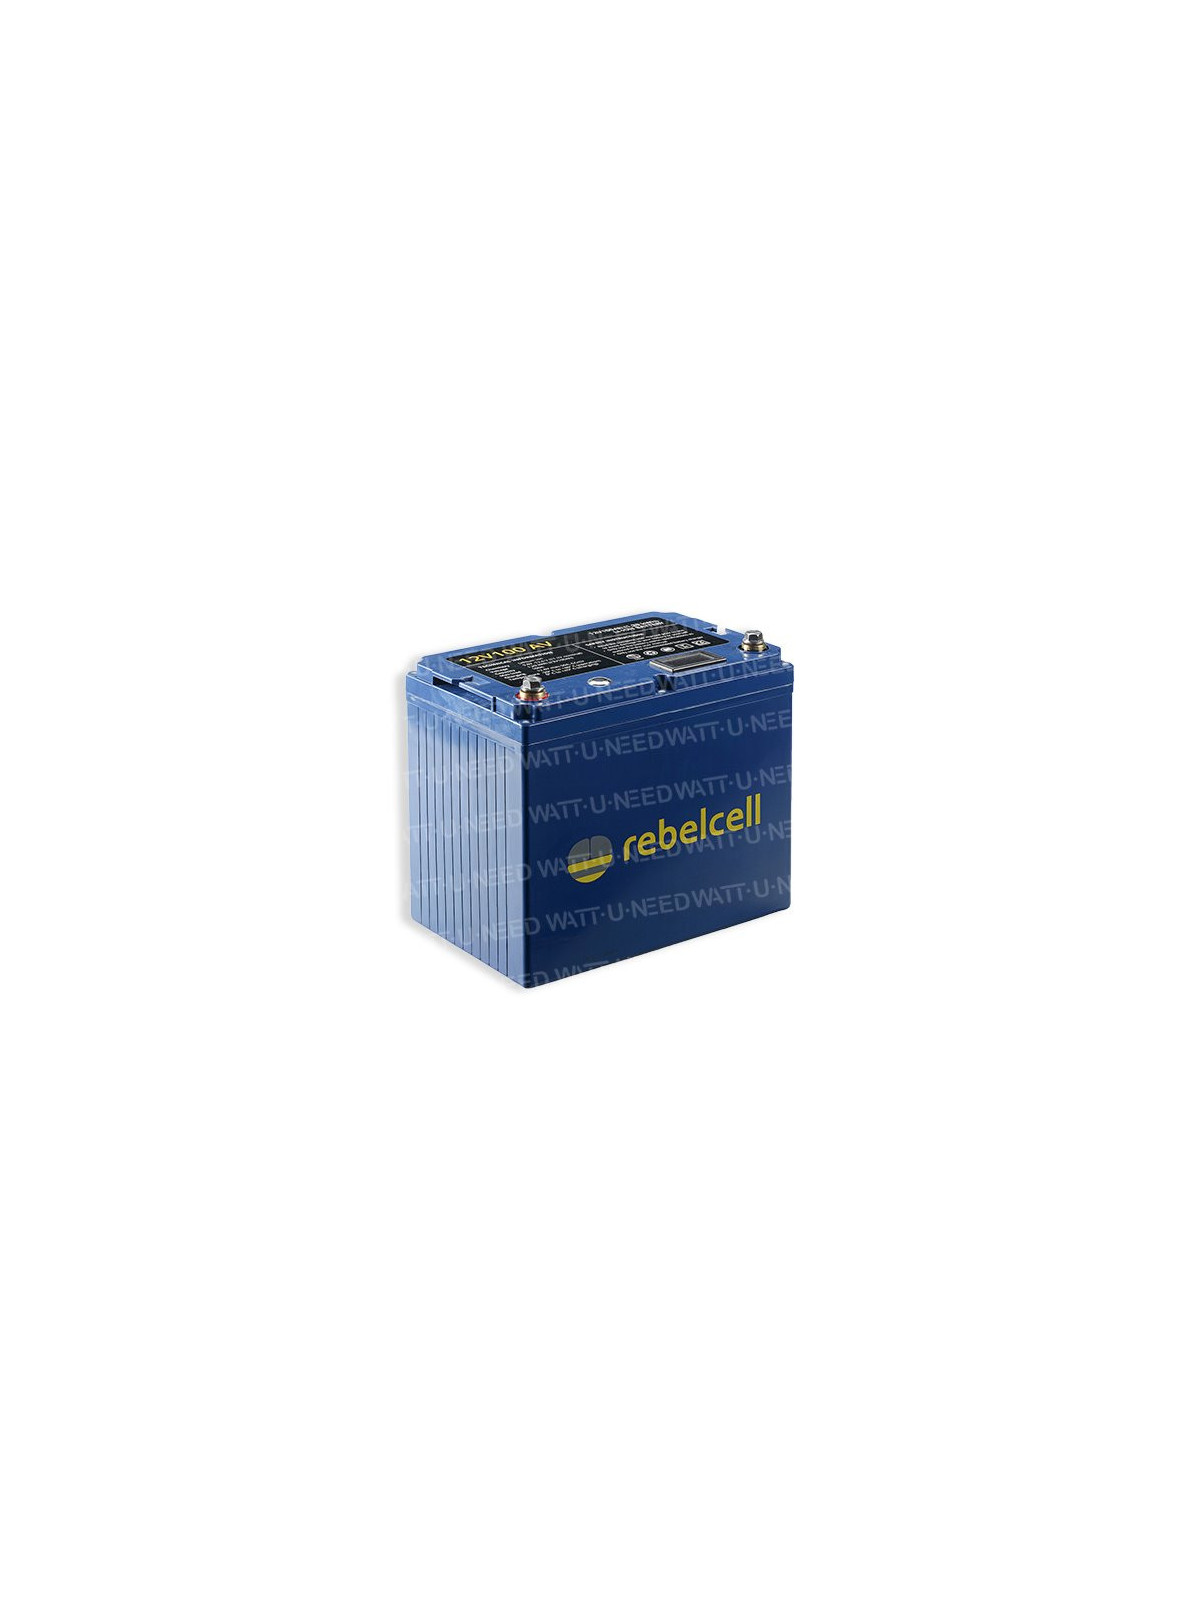 RebelCell Batterie Lithium 12V100Ah - 100AV